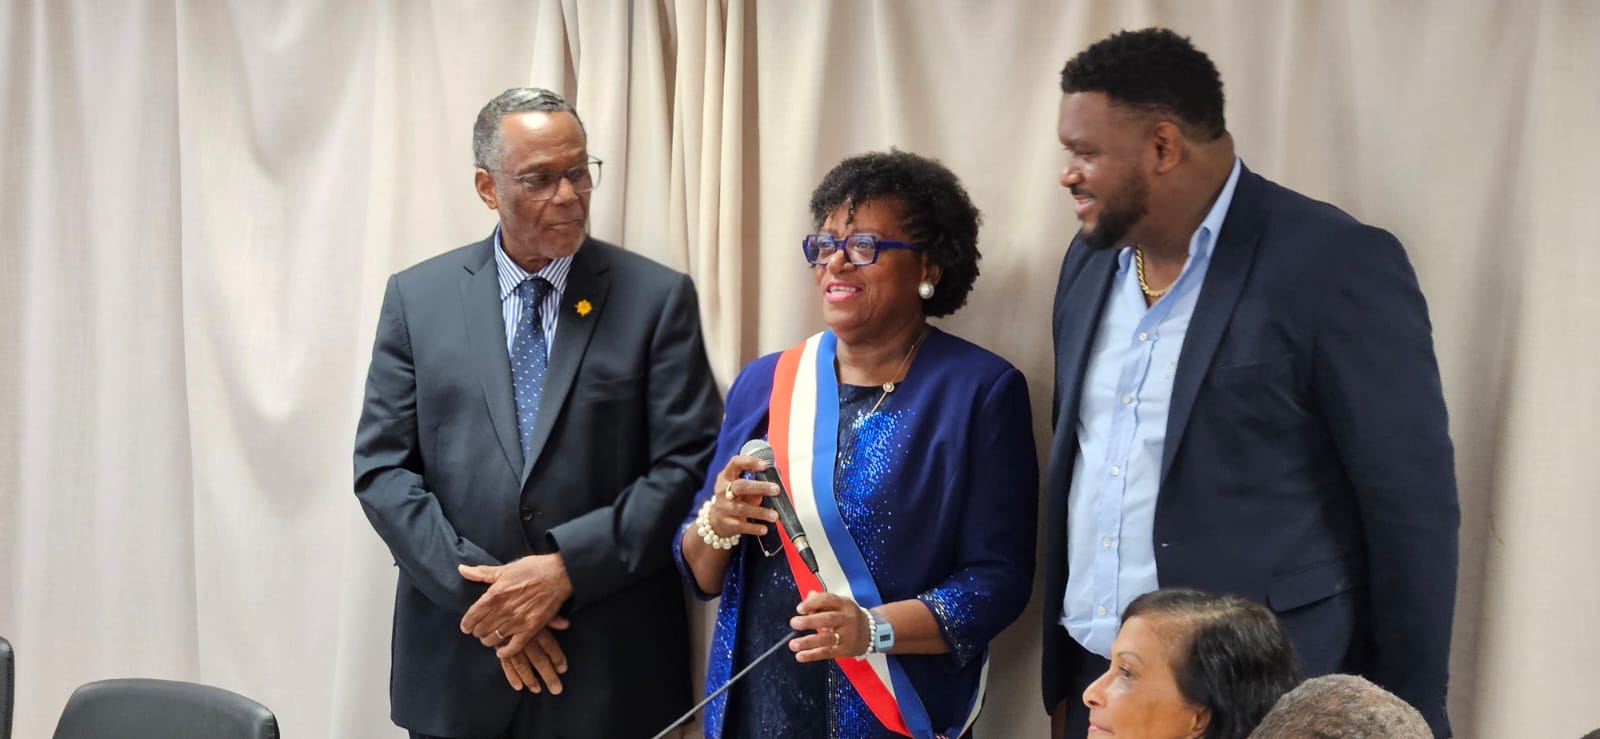     Patricia Telle est élue maire de Trinité

